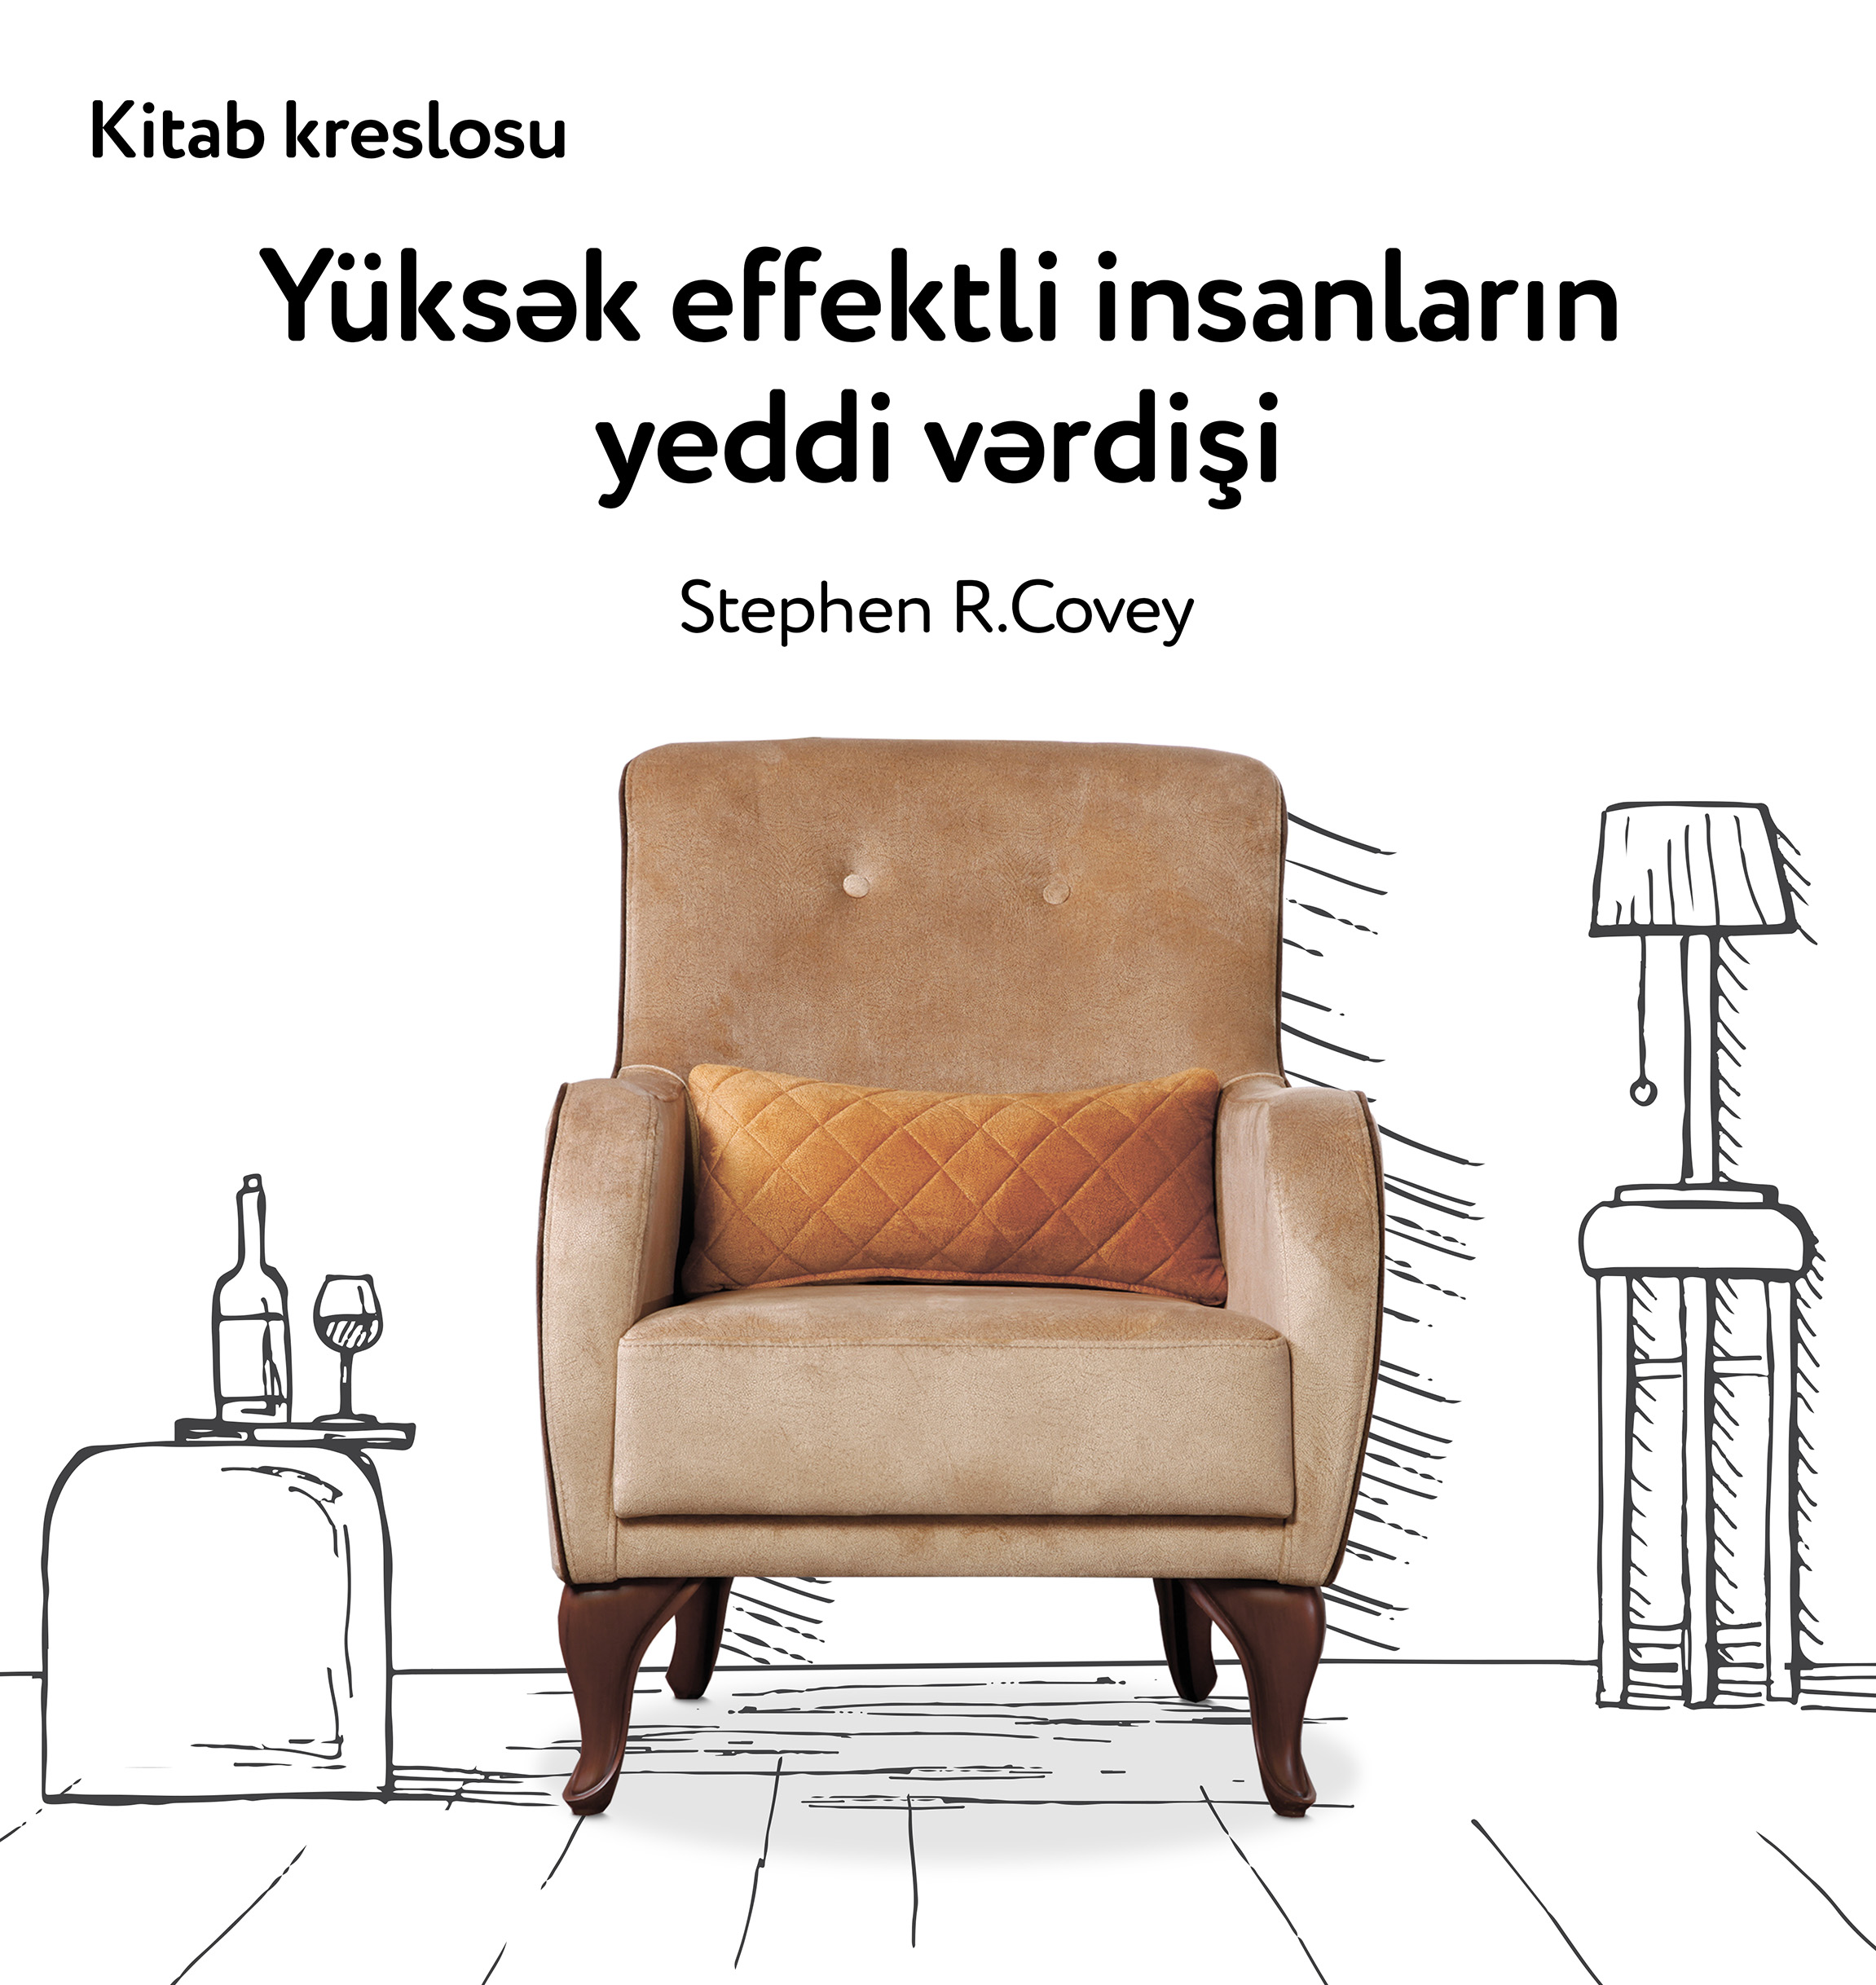 Книжнoе кресло «Семь навыков высокоэффективных людей», Стивен Р. Кавер